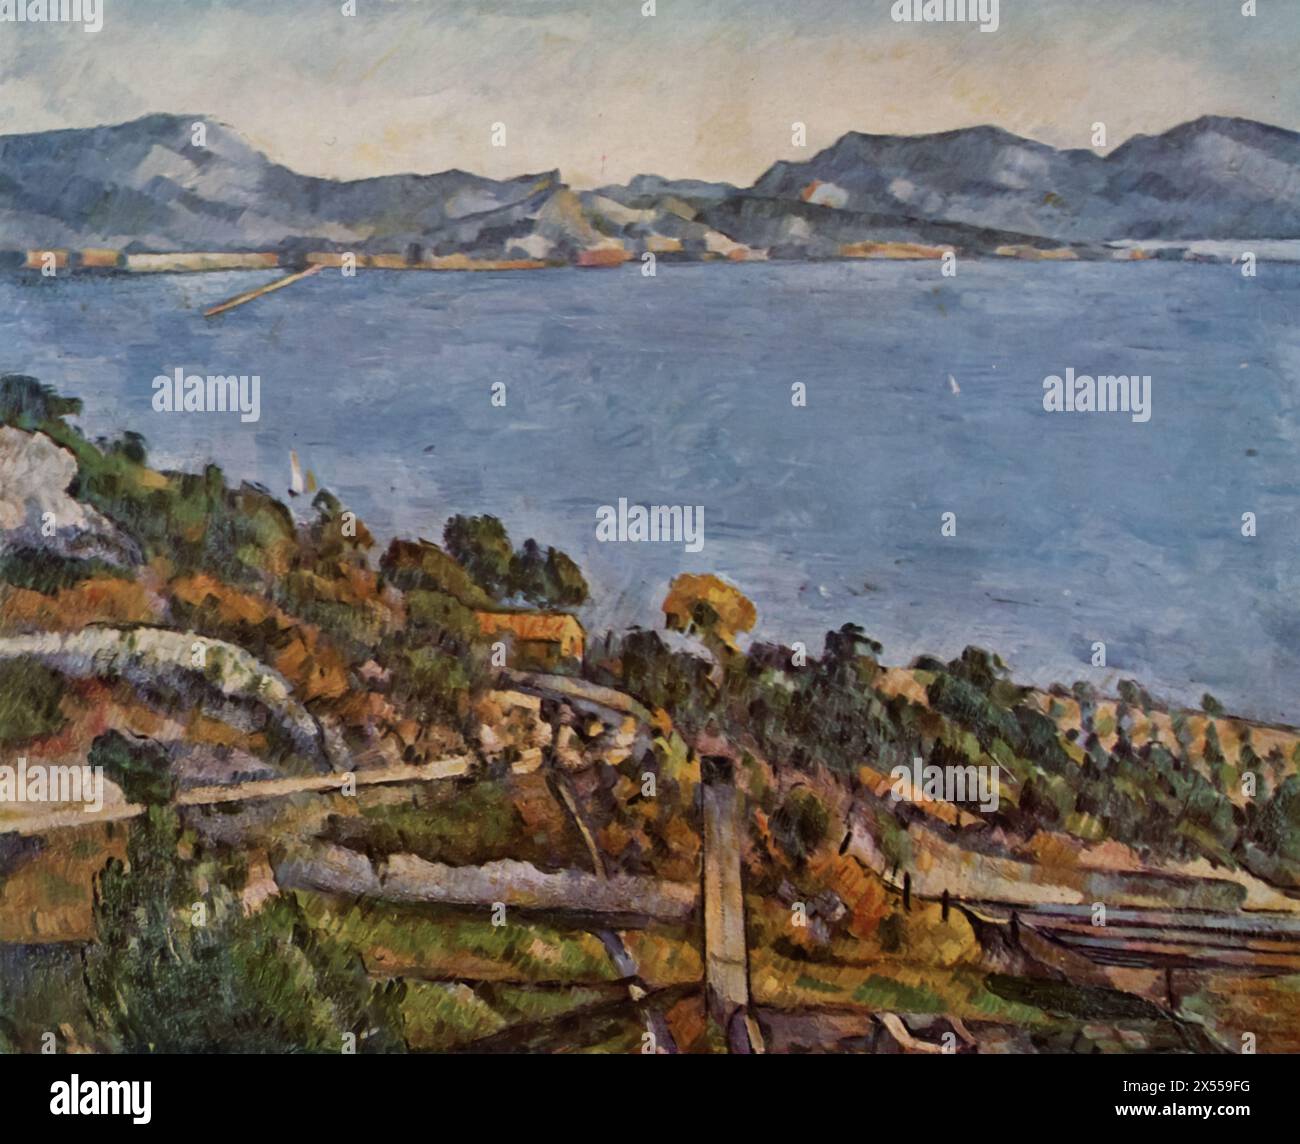 Il Golfo di Marsiglia visto da l'Estaque di Paul Cézanne, dipinto nel 1883, ospitato al Museo del Louvre di Parigi, Francia. Questo dipinto offre una vista panoramica del Golfo di Marsiglia dal punto panoramico de l'Estaque, soggetto frequente nelle opere di Cézanne. Foto Stock